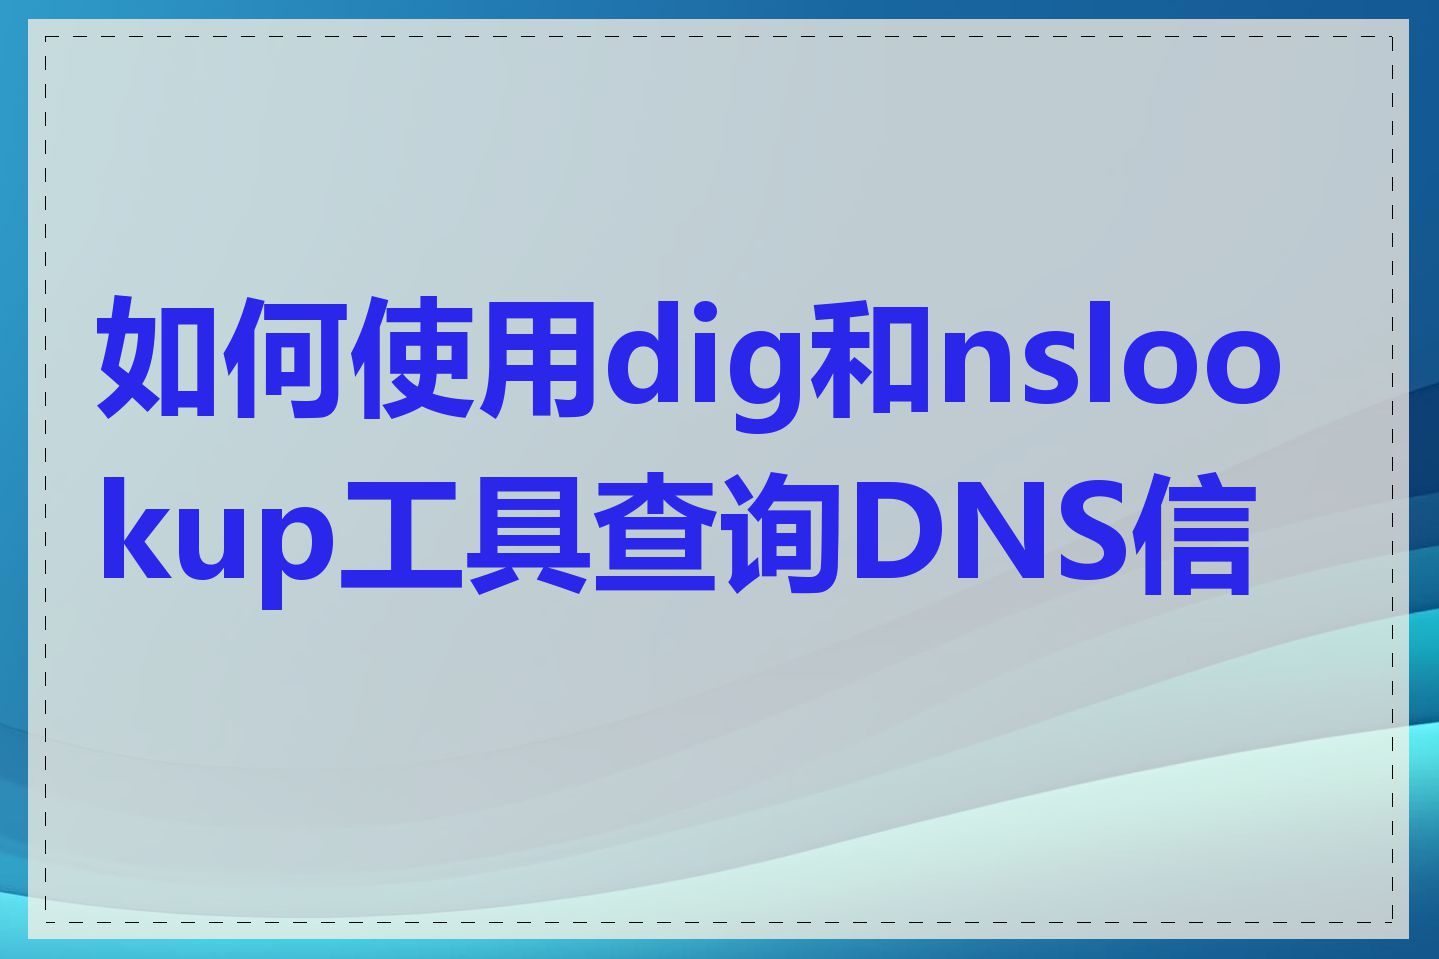 如何使用dig和nslookup工具查询DNS信息